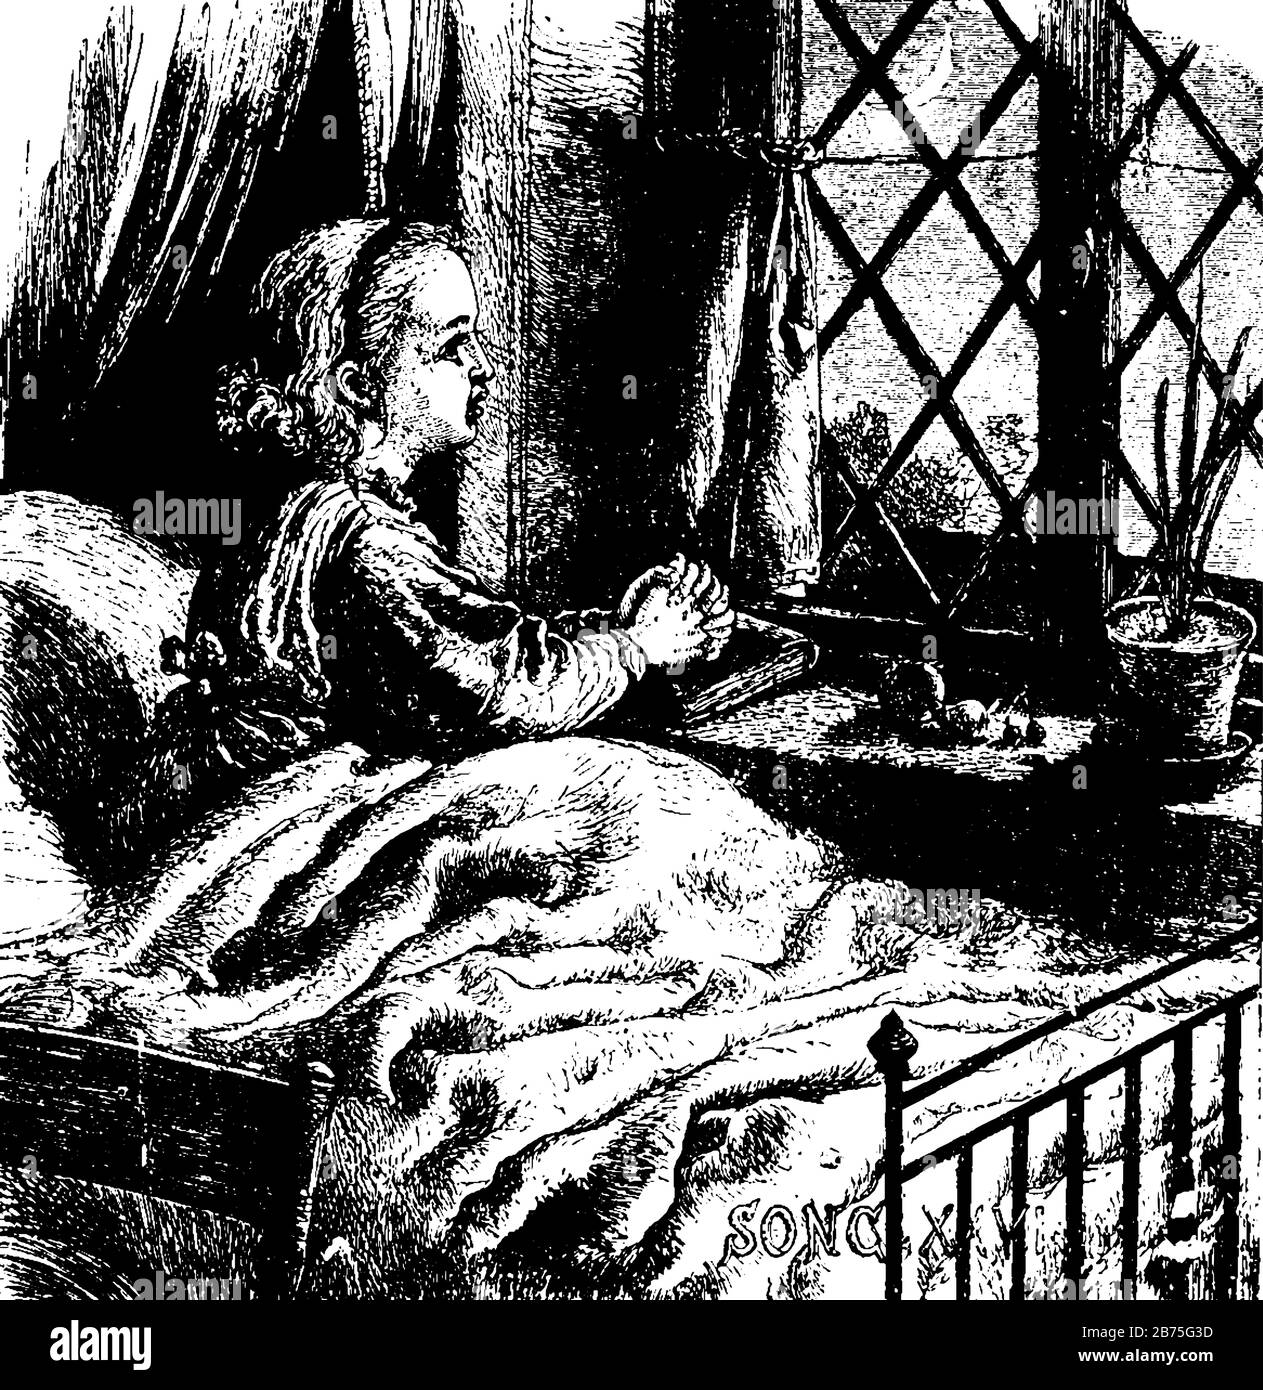 Una bambina a letto con le mani incrociate che guardano attraverso la finestra, la luna e le stelle nel cielo, il disegno di linea vintage o l'illustrazione dell'incisione Illustrazione Vettoriale